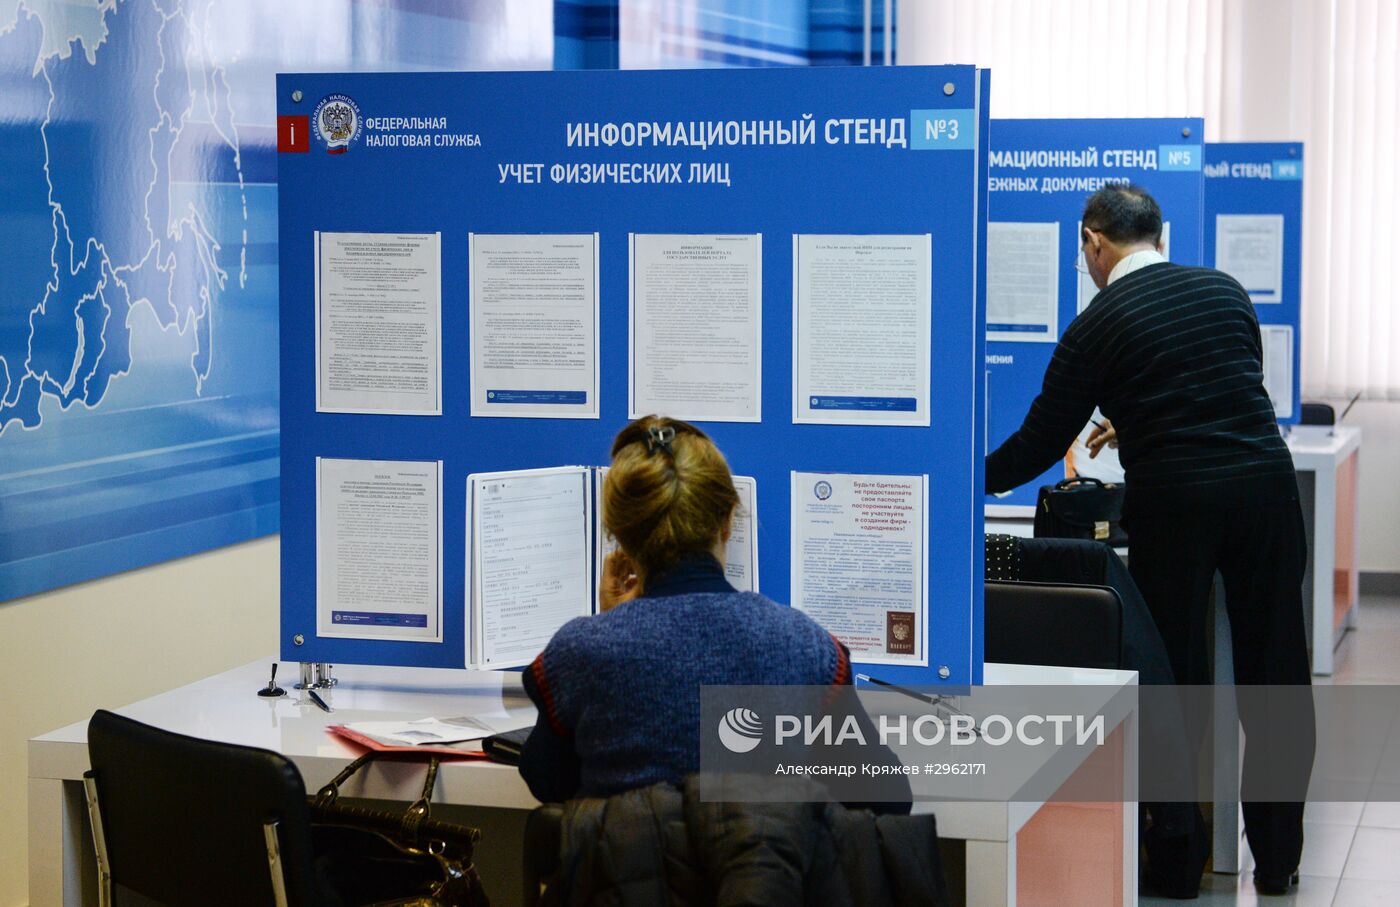 Инспекция Федеральной налоговой службы РФ в Новосибирске